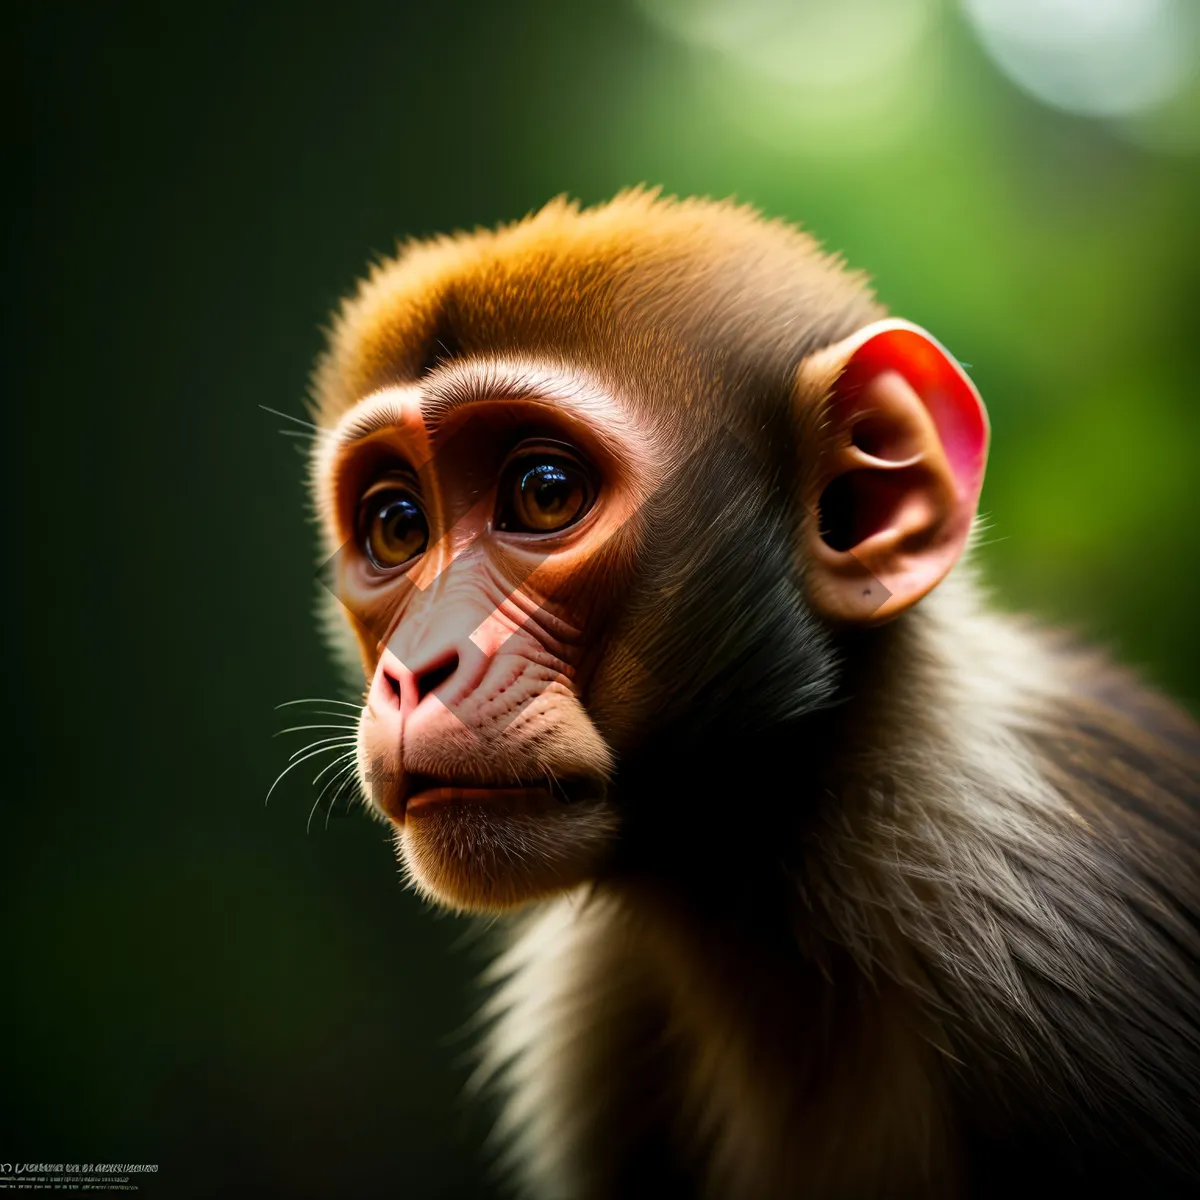 Picture of Wild Primate in Jungle